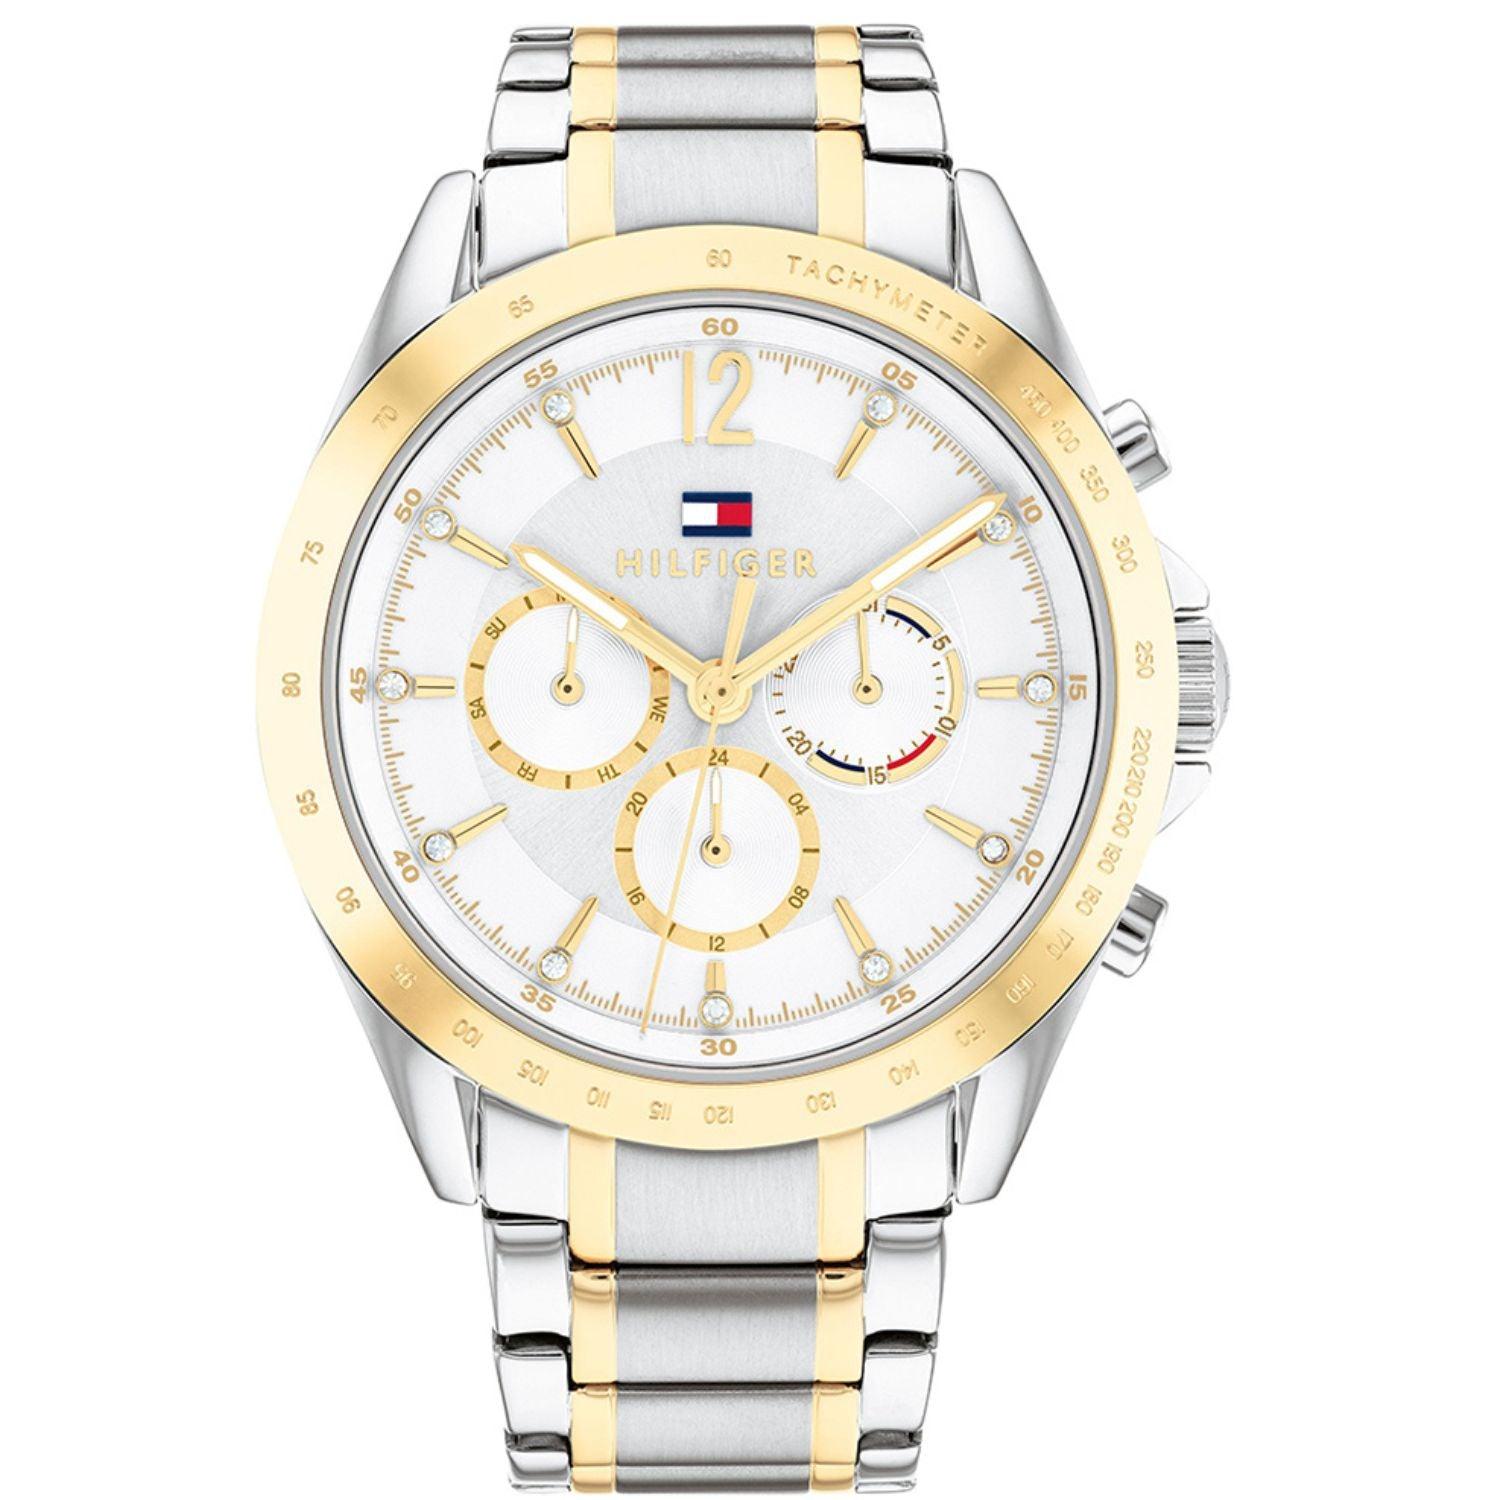 Γυναικείο ρολόι Tommy Hilfiger Kenzie 1782555 με δίχρωμο ασημί-χρυσό ατσάλινο μπρασελέ και άσπρο καντράν διαμέτρου 40mm με ζιργκόν.